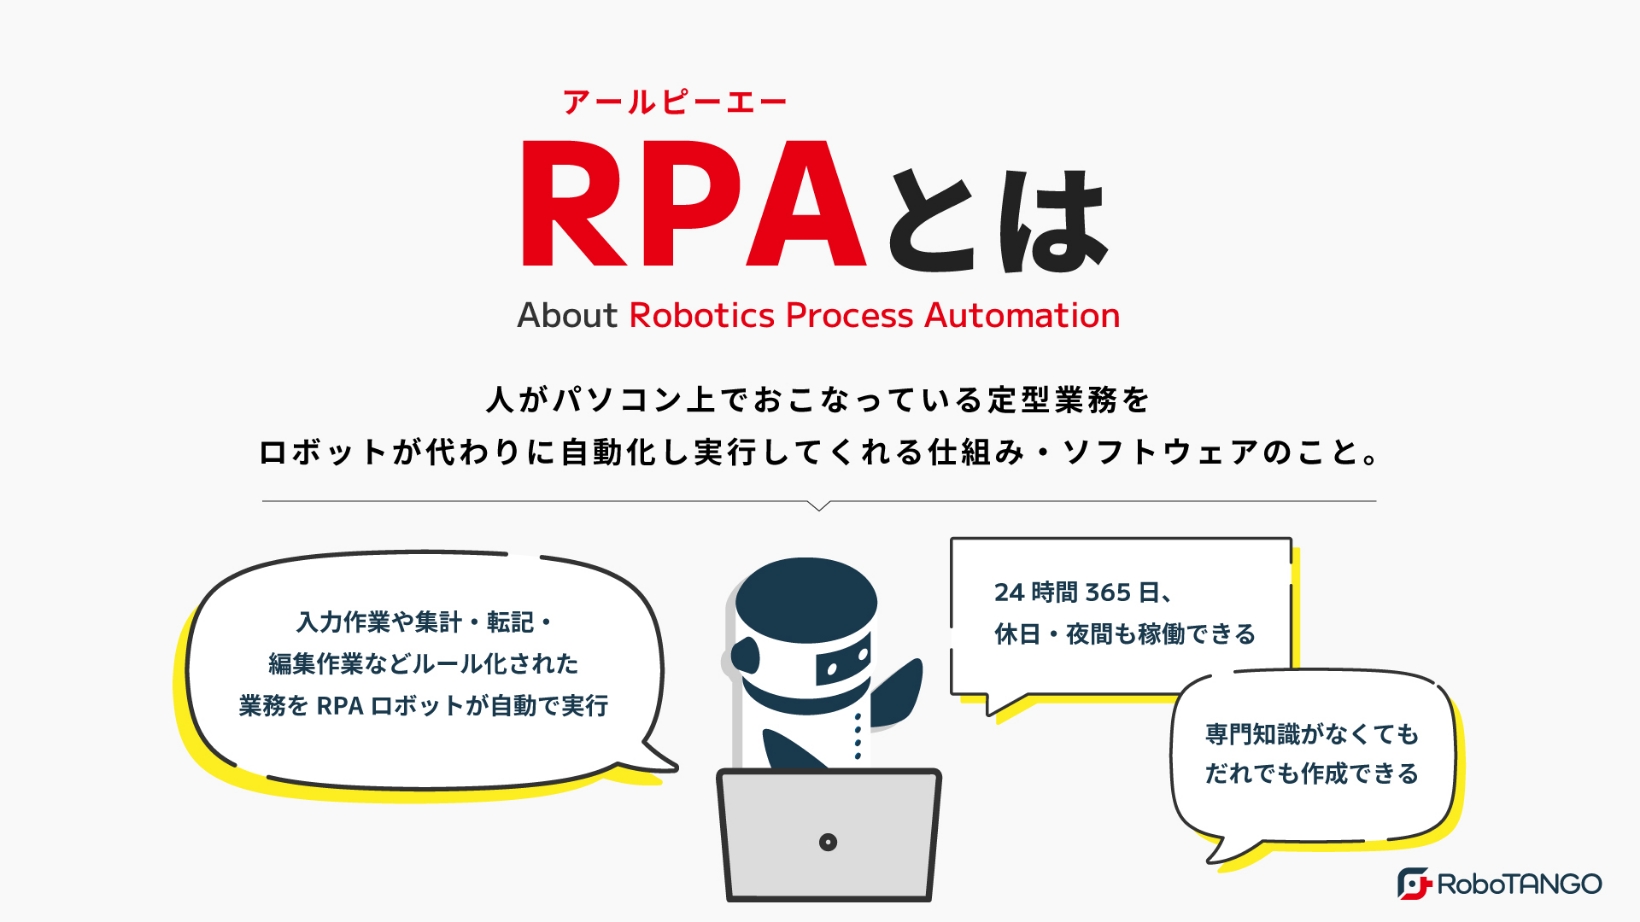 RPAとはの解説。RPAとは、「Robotics Process Automation（ロボティック・プロセス・オートメーション）」の略で、人がパソコン上でおこなっている定型業務を、ロボットが代わりに自動化し実行してくれる仕組み・ソフトウェアのこと